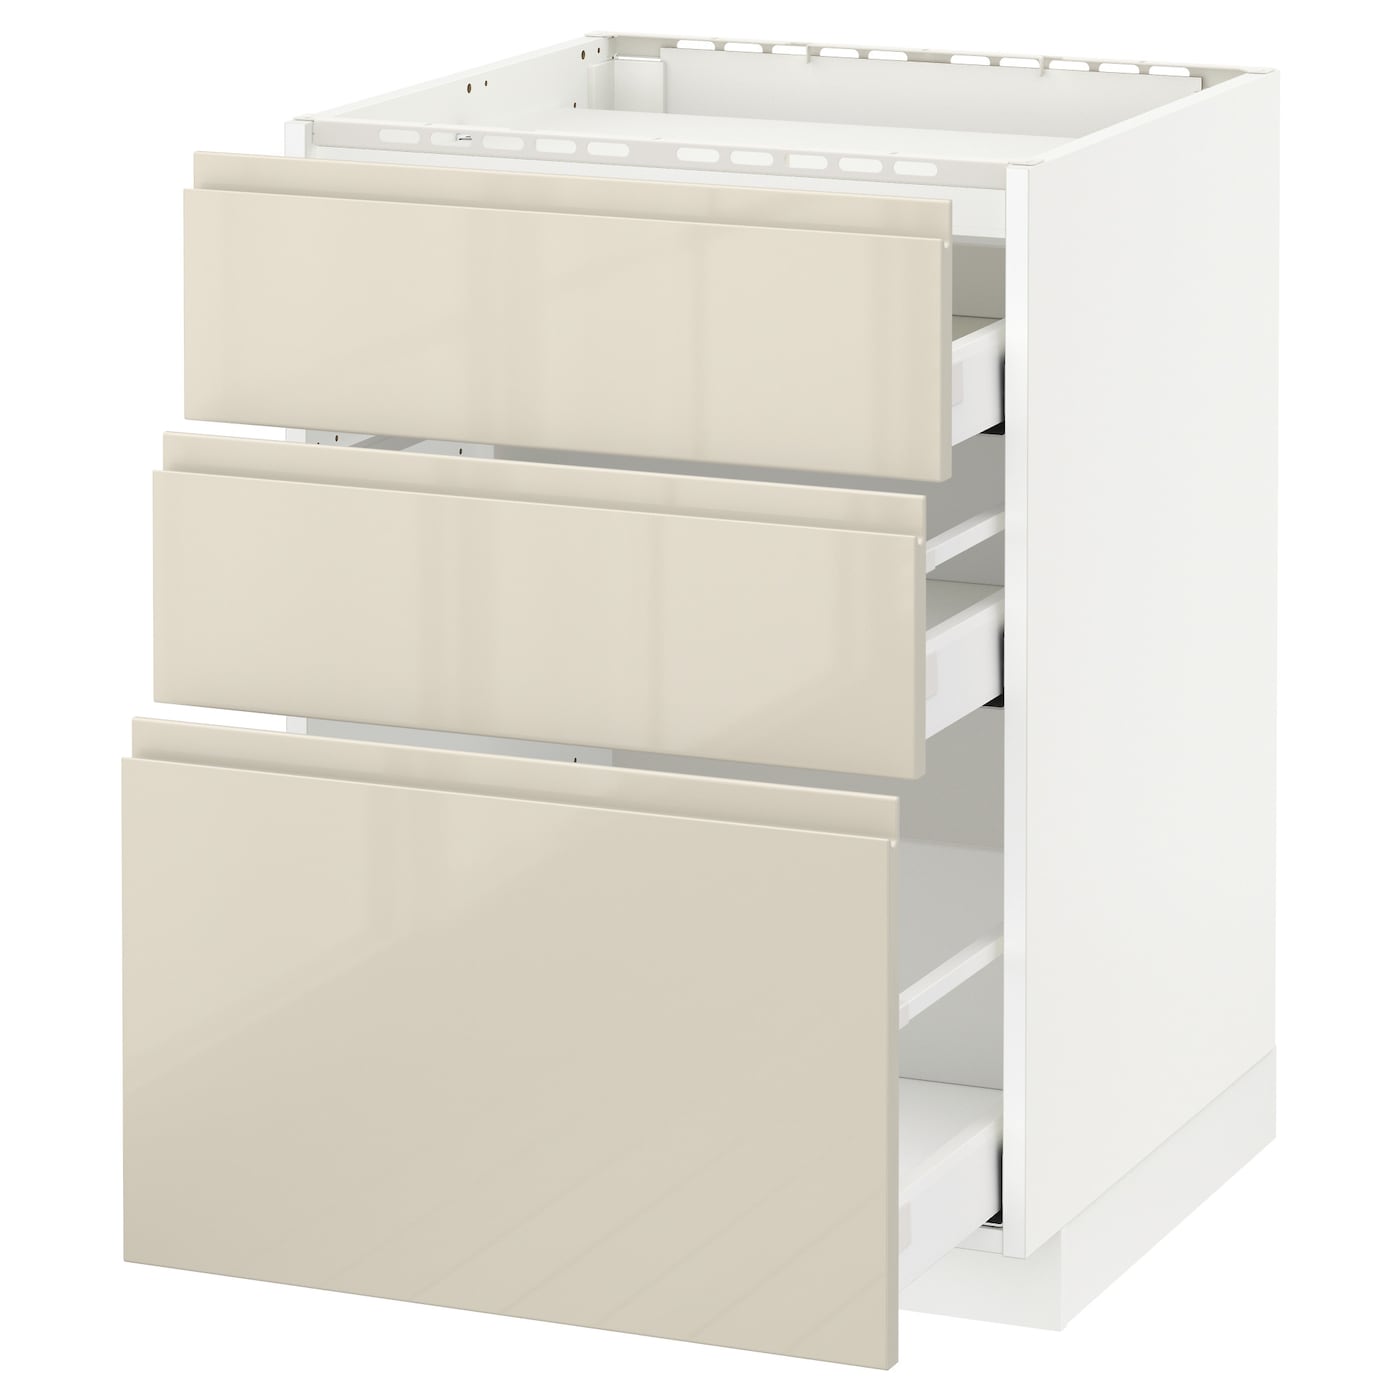 Напольный шкаф  - IKEA METOD MAXIMERA, 88x62,1x60см, белый/бежевый, МЕТОД МАКСИМЕРА ИКЕА